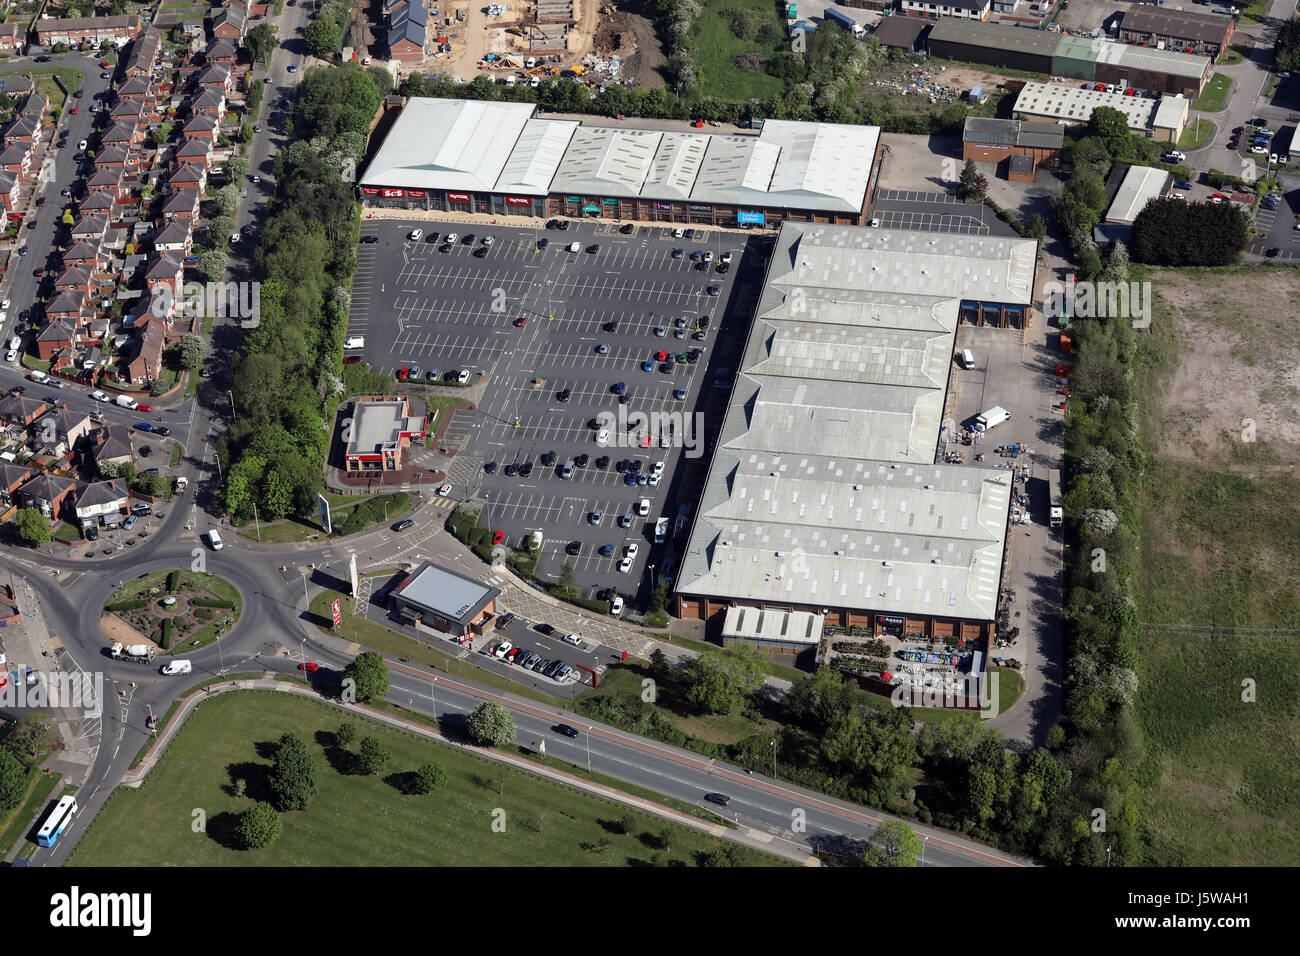 Vue aérienne de la centrale Darlington Retail Park, Royaume-Uni Banque D'Images